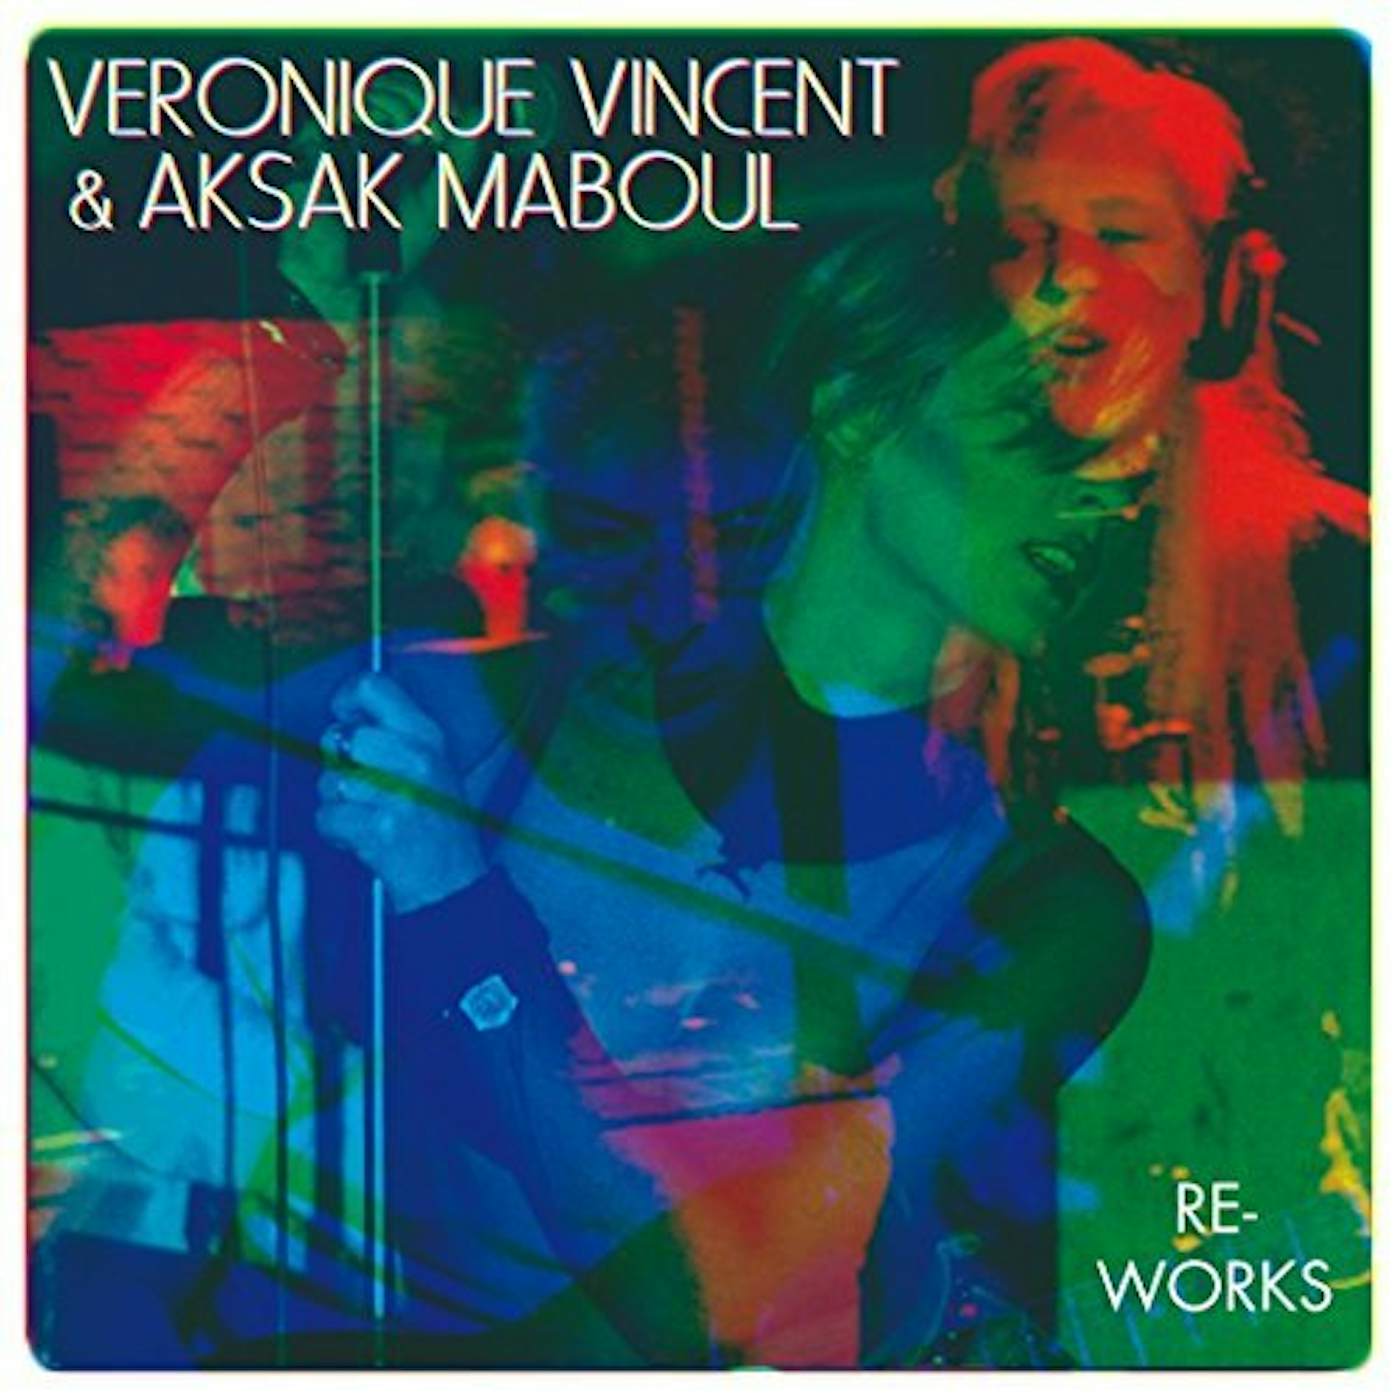 Véronique Vincent & Aksak Maboul RE-WORKS Vinyl Record